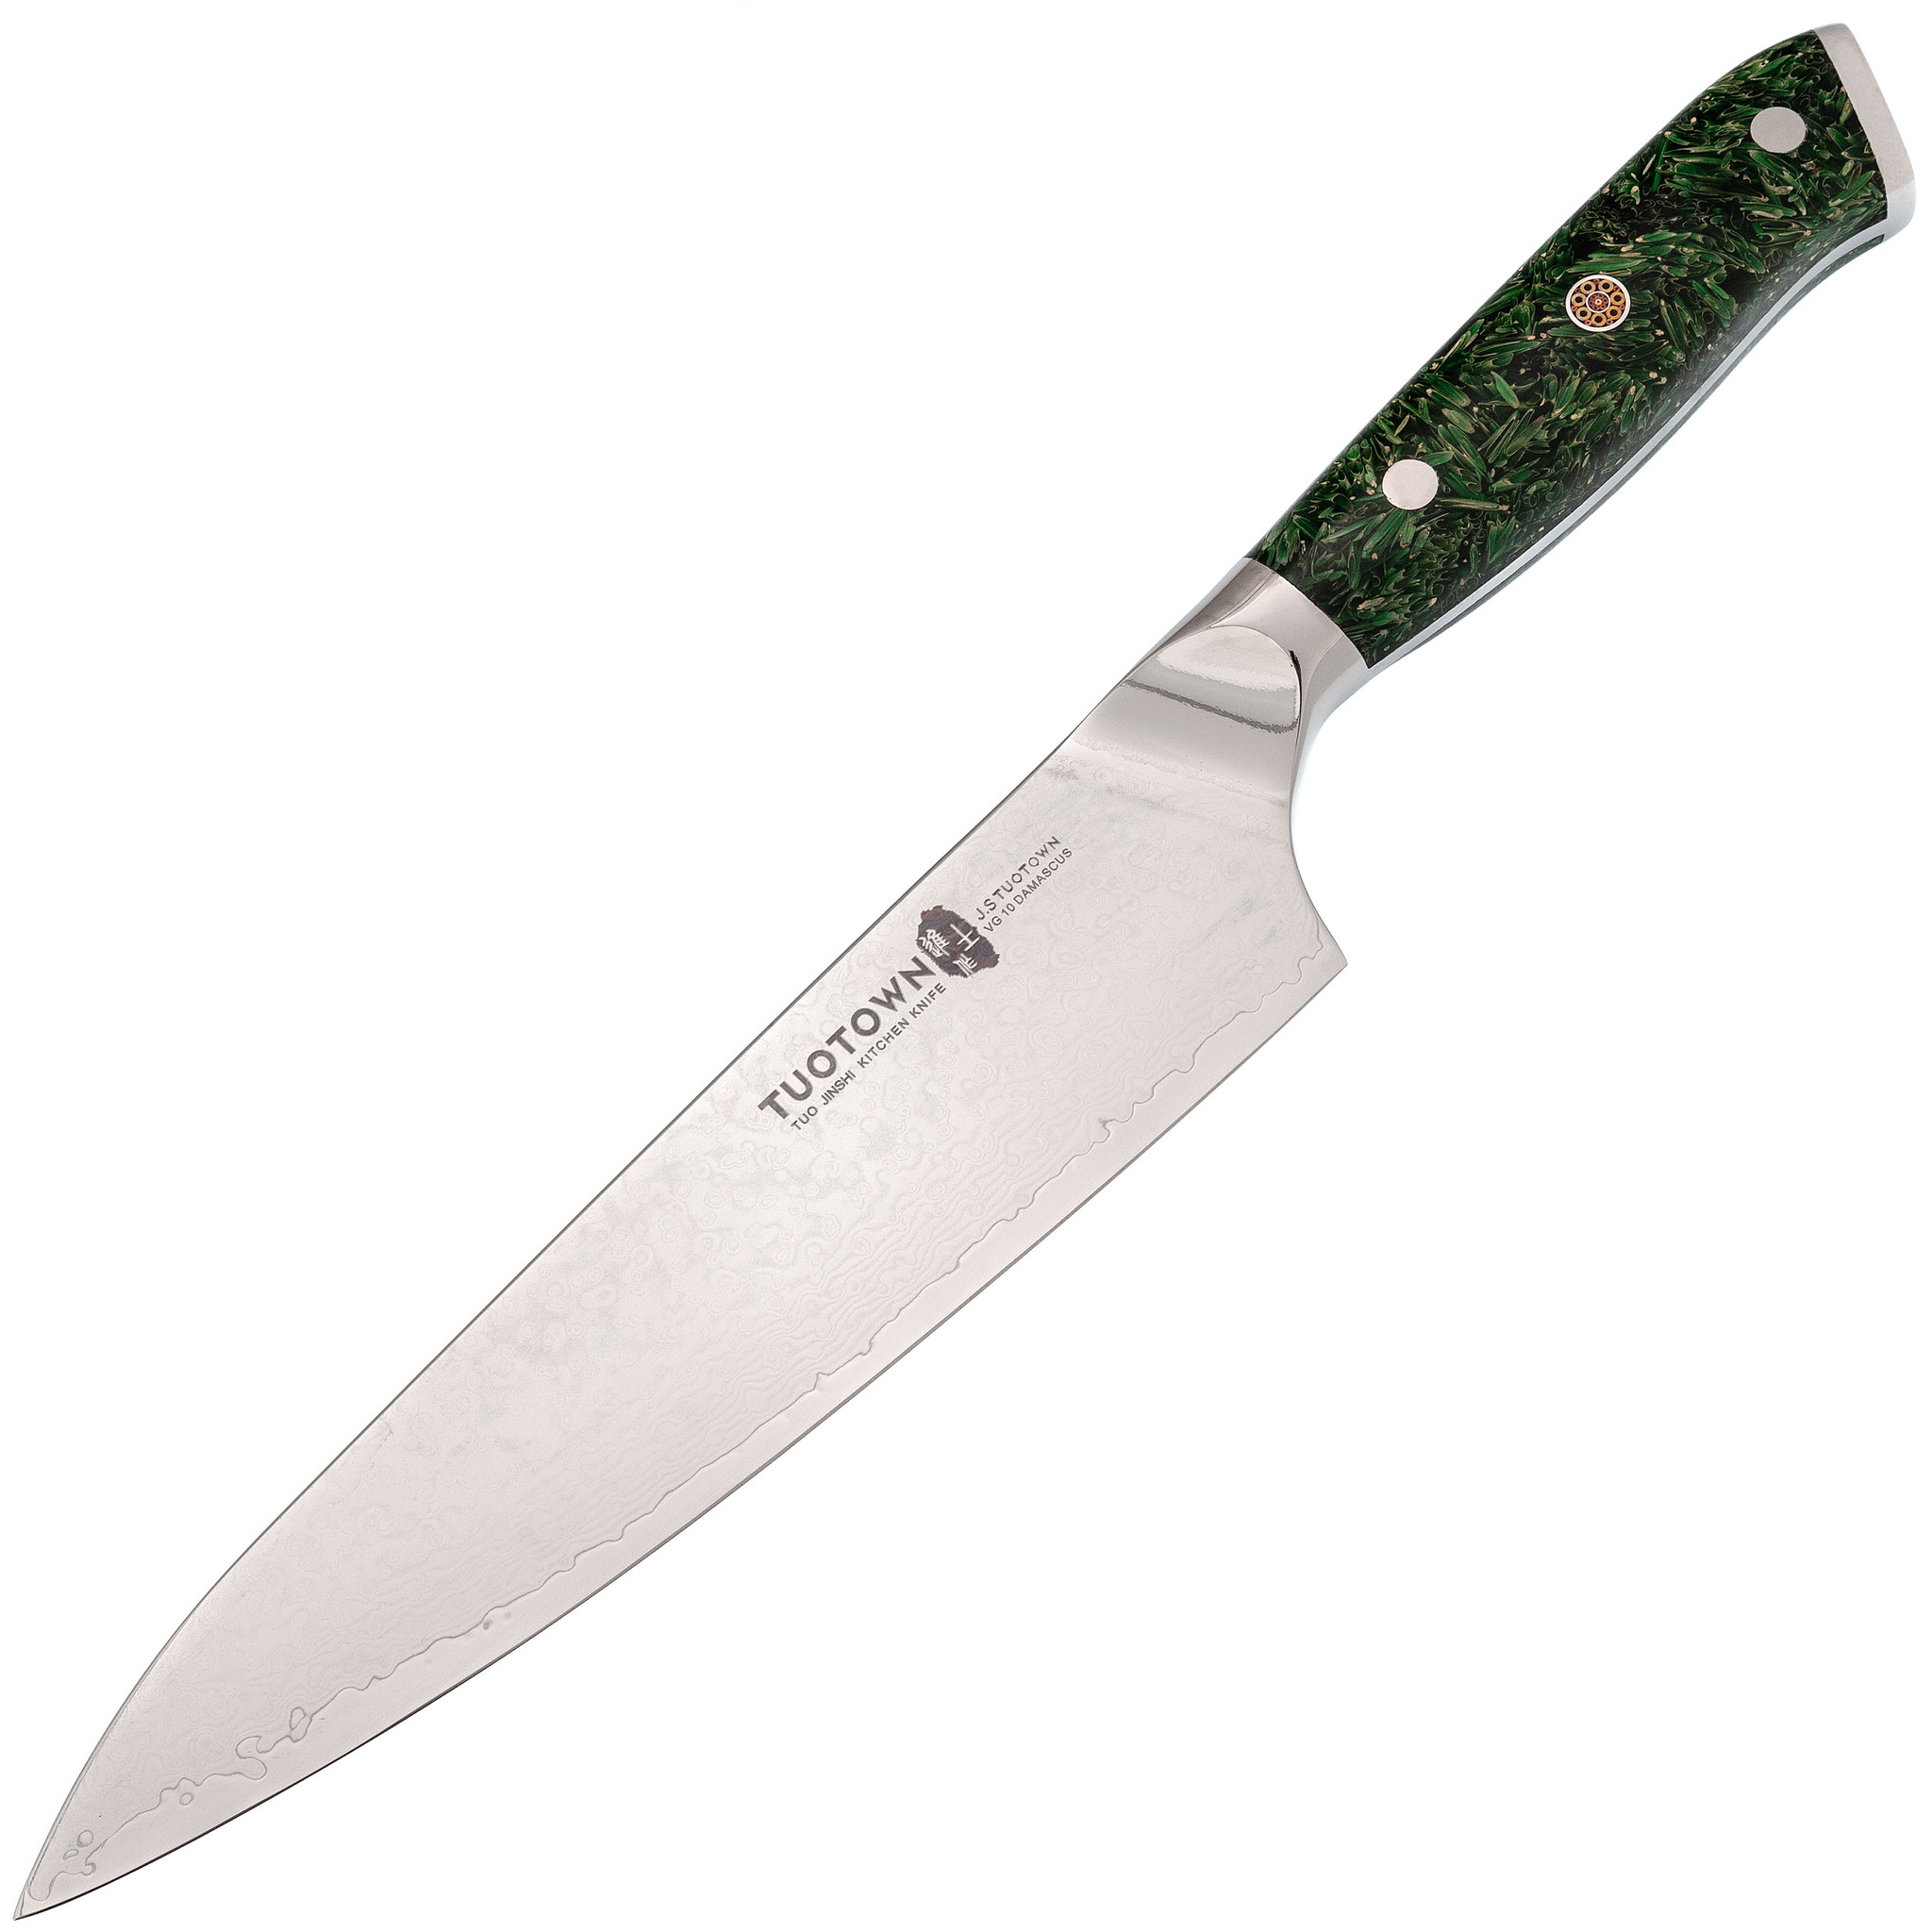 Кухонный нож Шеф Tuotown, сталь VG10, обкладка Damascus, рукоять акрил, зеленый